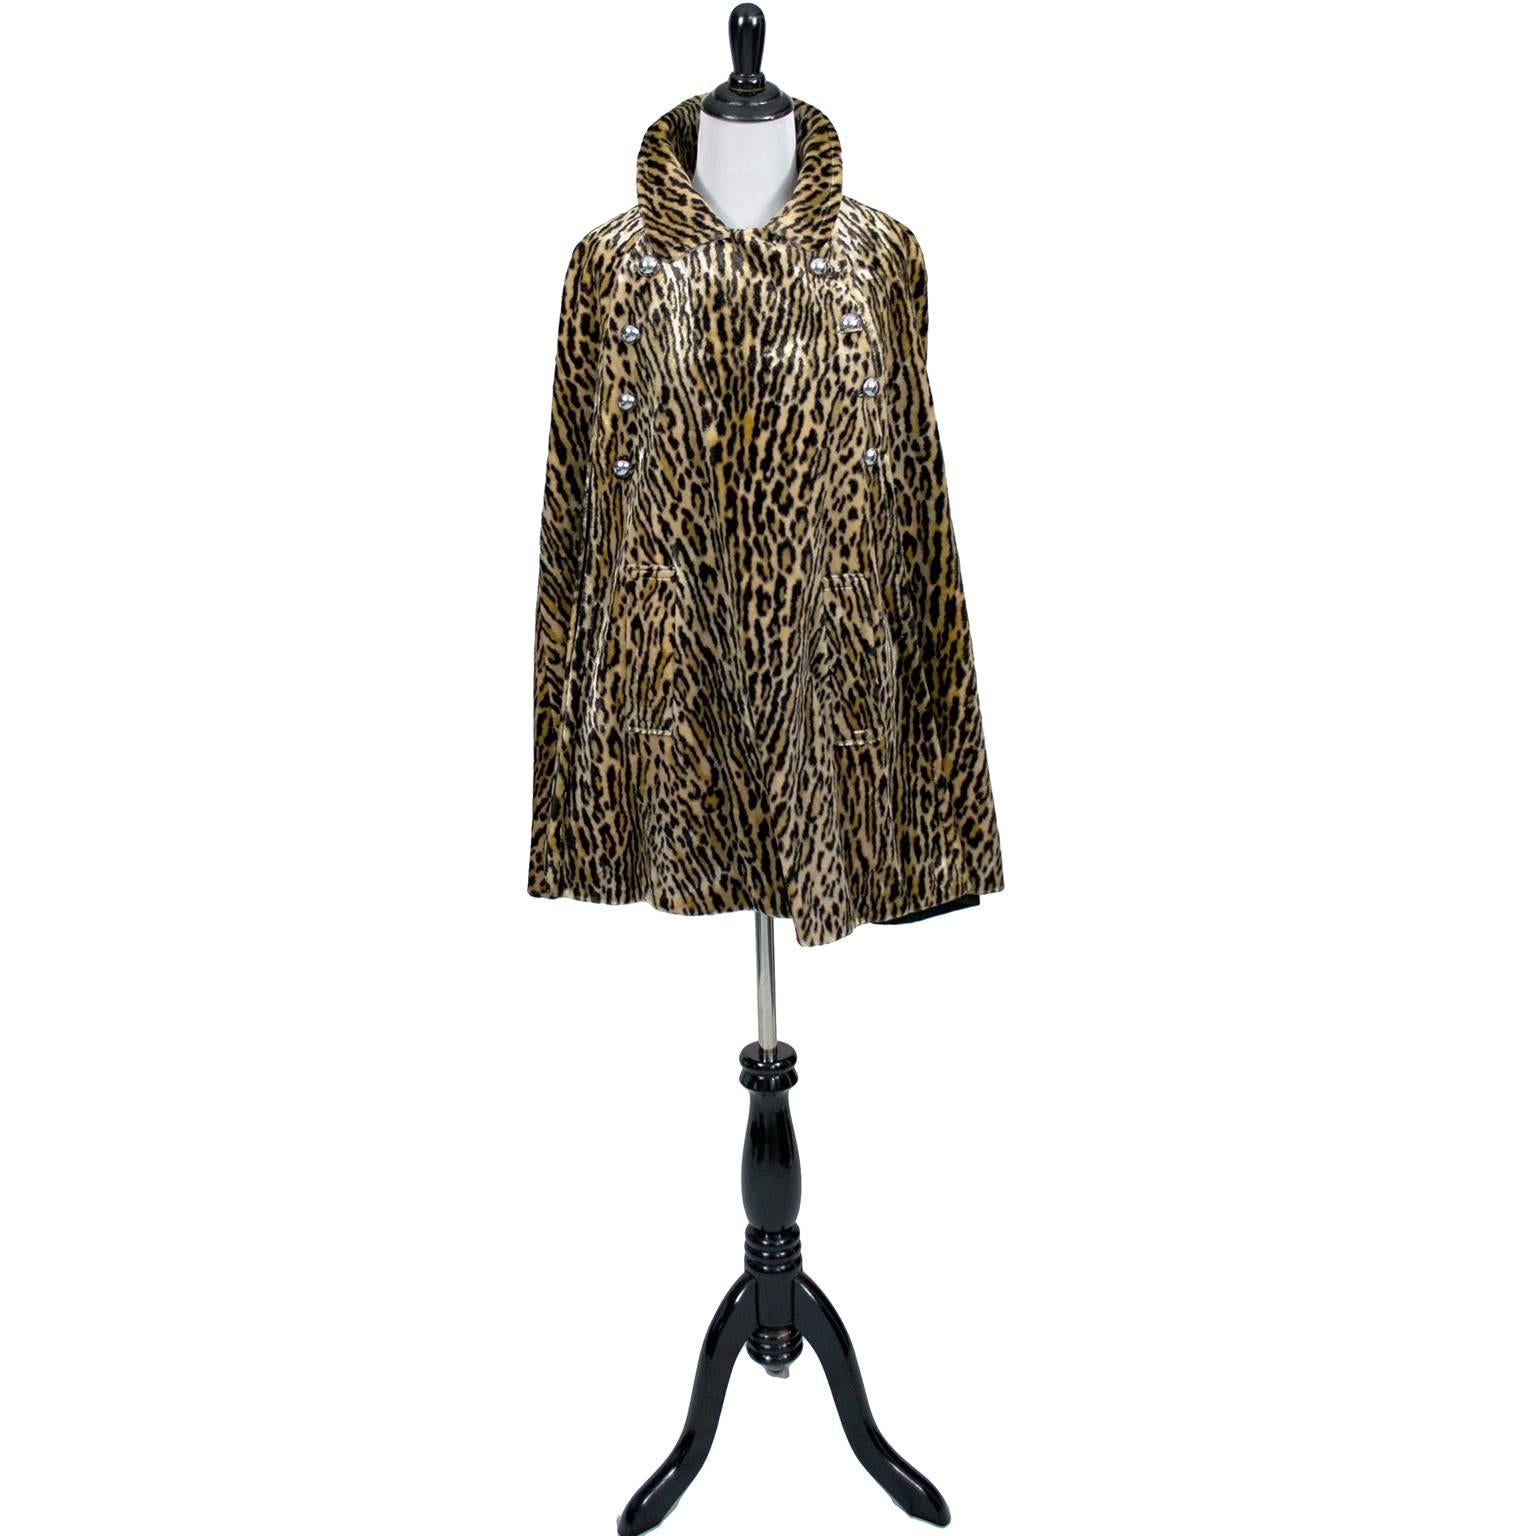 Women's Harolde's Vintage Leopard Faux Fur Cape 1960s Chic Outerwear S/M